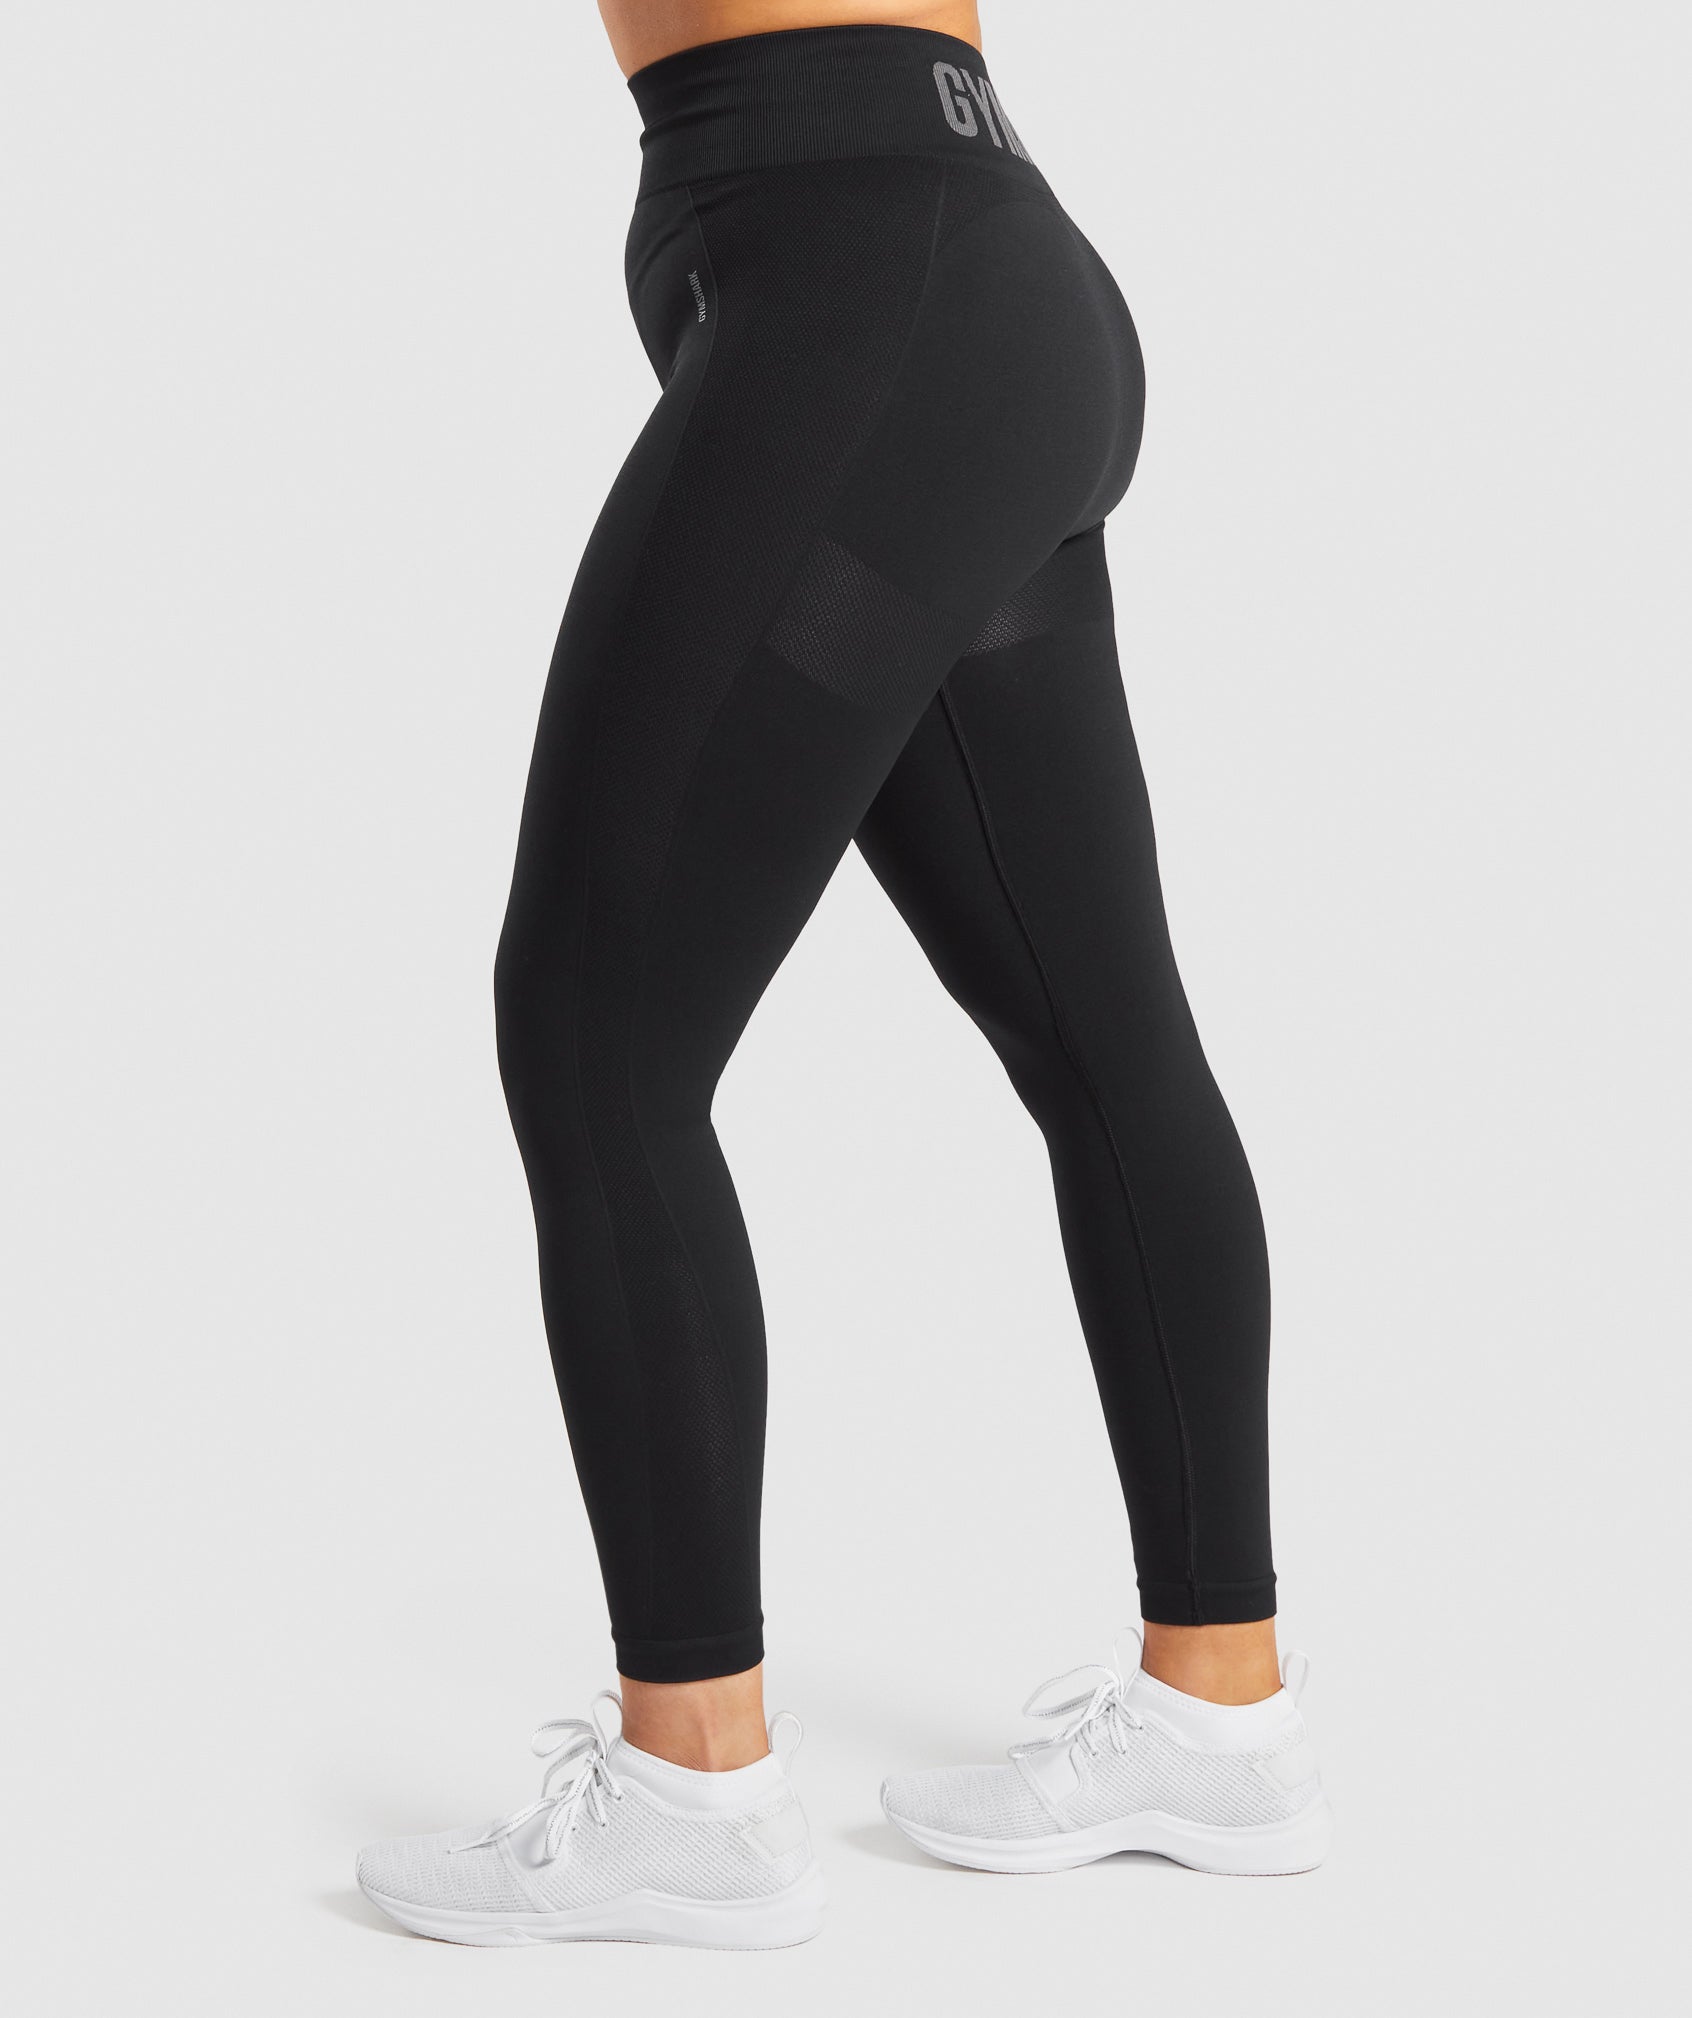 gymshark flex leggings. Instagram: olivialarsonfit  Outfits with leggings,  Gymshark flex leggings, Flex leggings